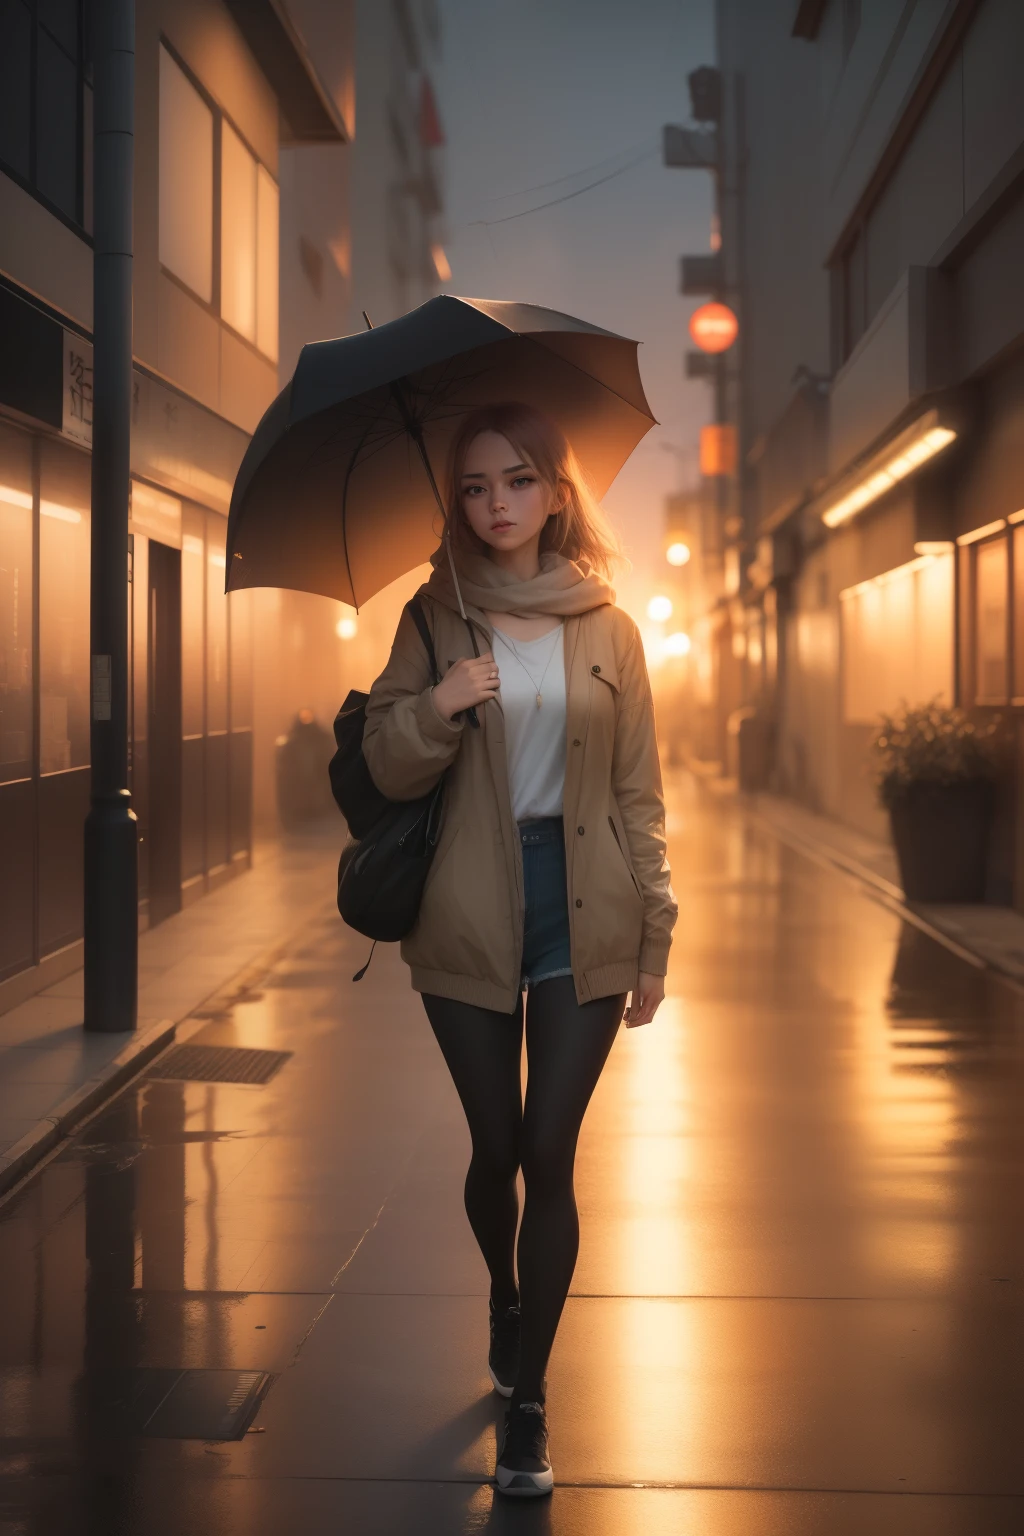 Hay una mujer joven caminando a casa con un paraguas., Mujer en sus veinte años, lluvia ligera, escena de anime de tokio, estilo de alena aenami, atardecer tranquilo, hermosa escena de anime, anime atmosférico, fondo de pantalla de arte anime 4k, fondo de pantalla de arte anime 8 k